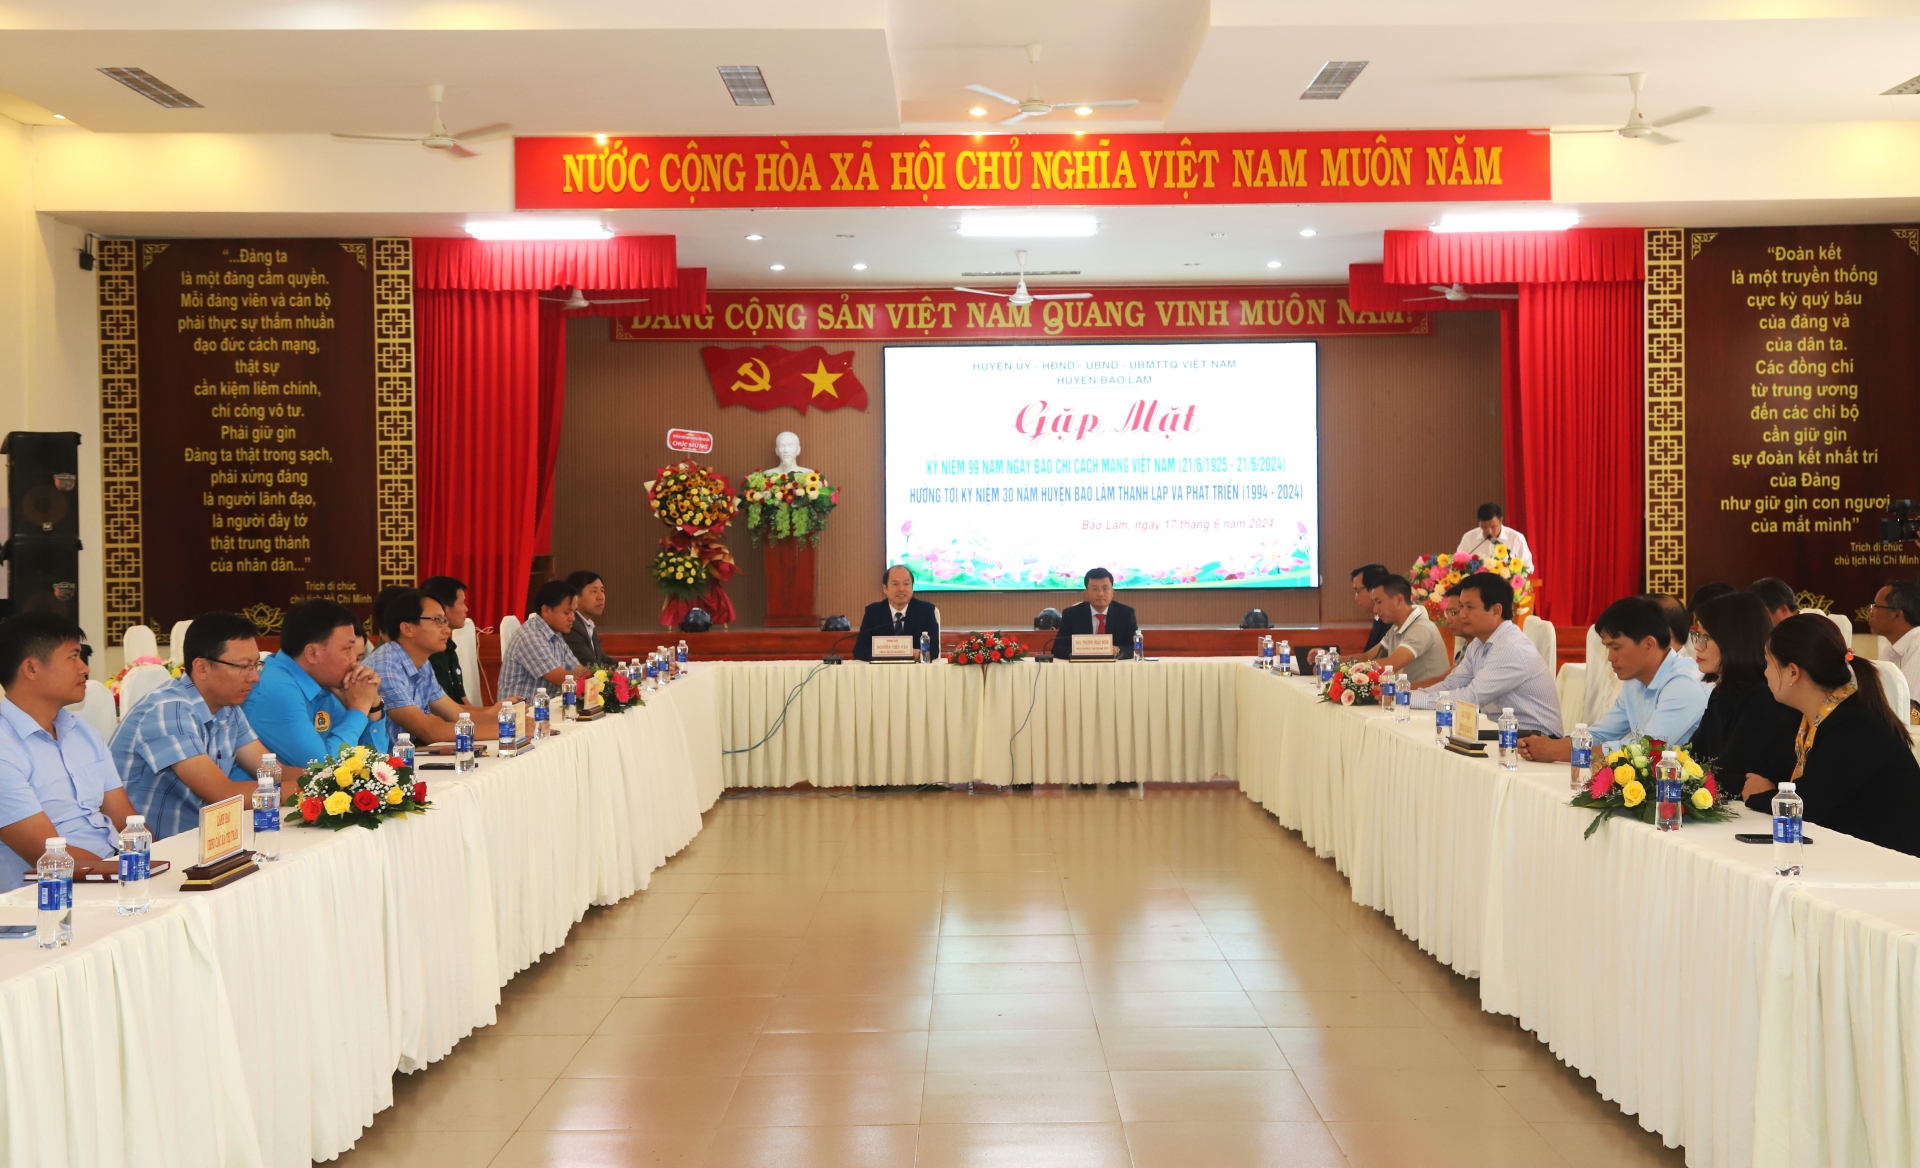 Quang cảnh buổi gặp mặt thân mật giữa lãnh đạo huyện Bảo Lâm và đại diện các cơ quan thông tấn, báo chí